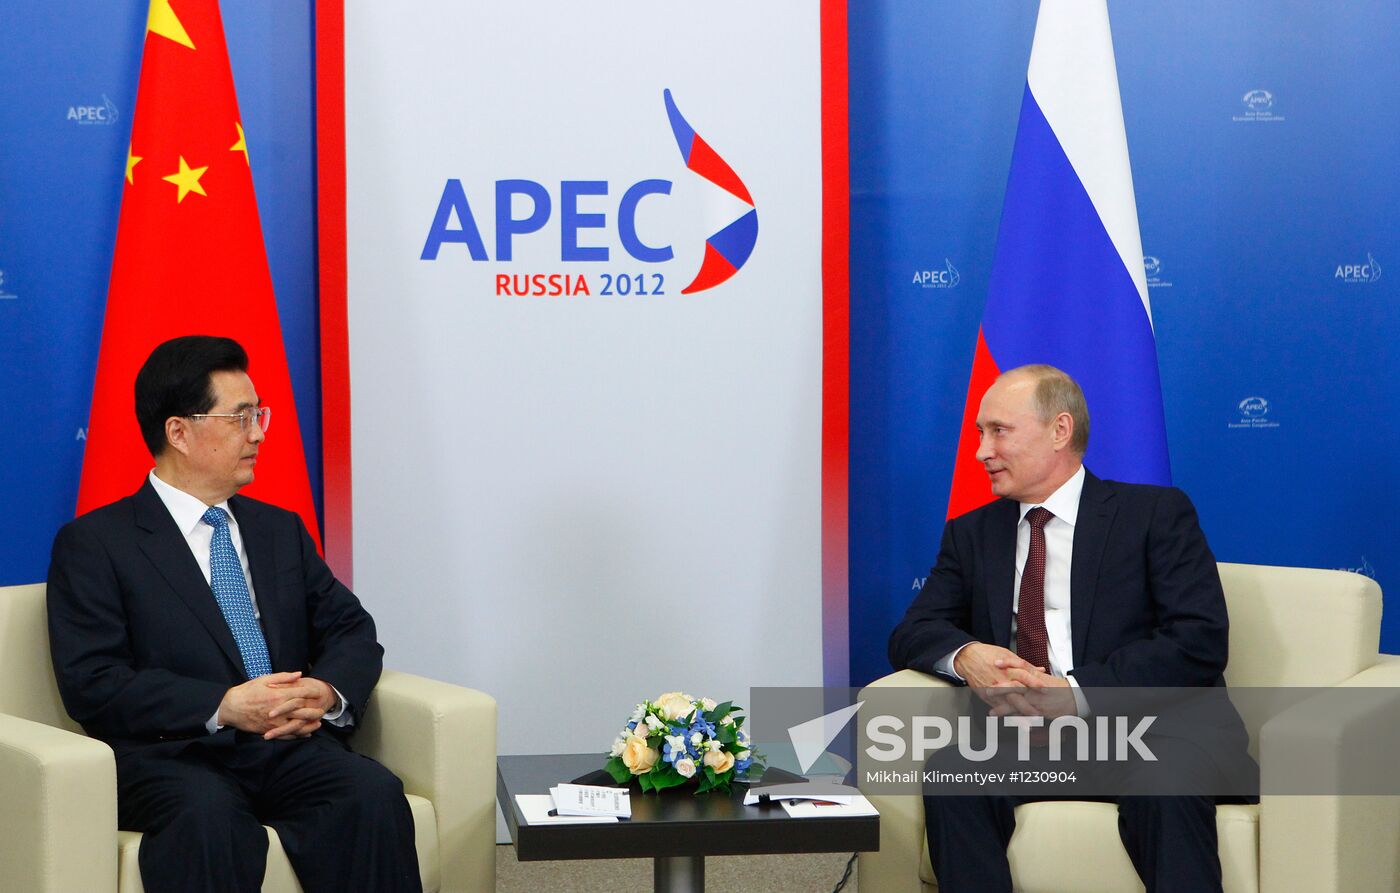 Vladimir Putin's meetings with APEC economy leaders #М#